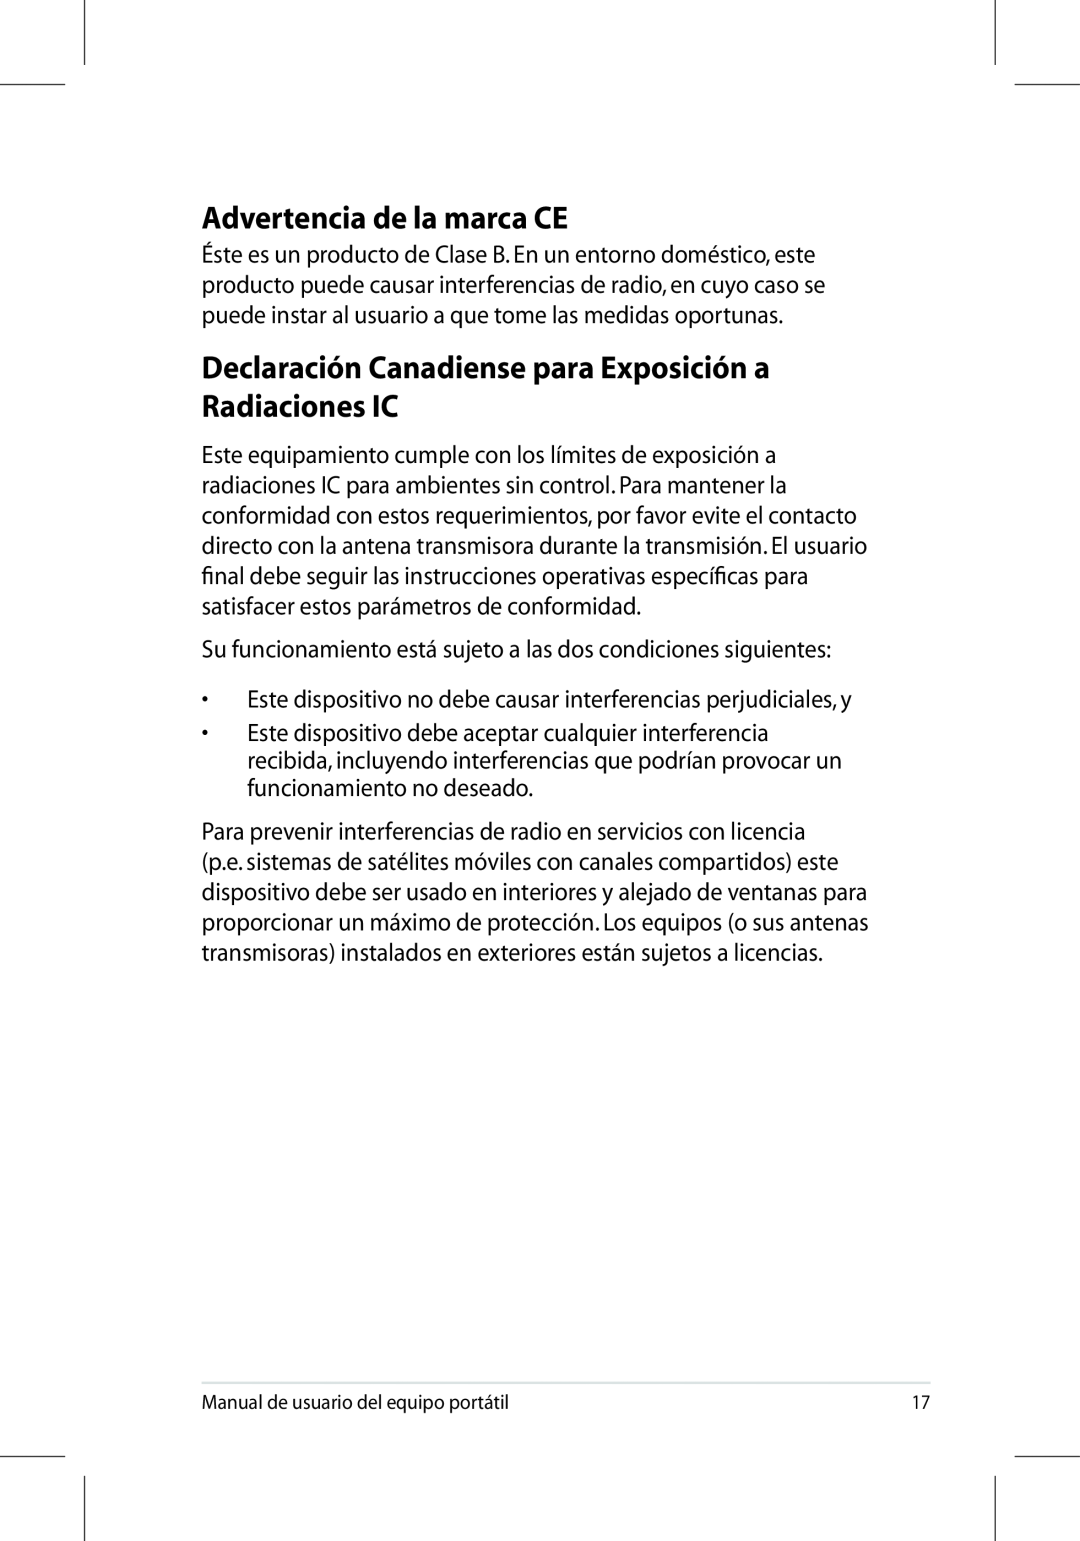 Asus UL50/PRO5G/X5G manual Advertencia de la marca CE, Declaración Canadiense para Exposición a Radiaciones IC 